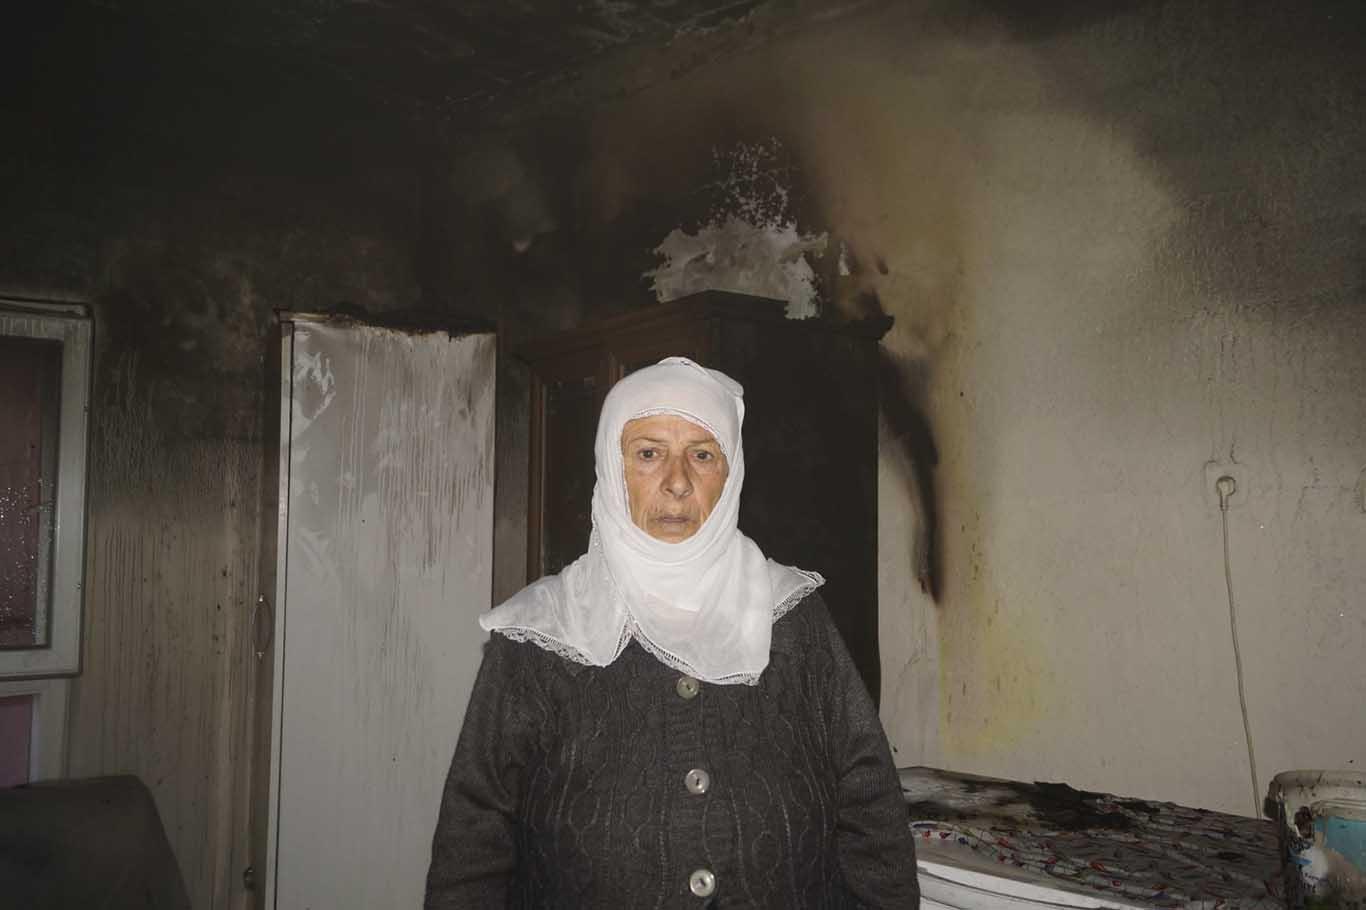 Evi yanan yaşlı kadın yardım bekliyor